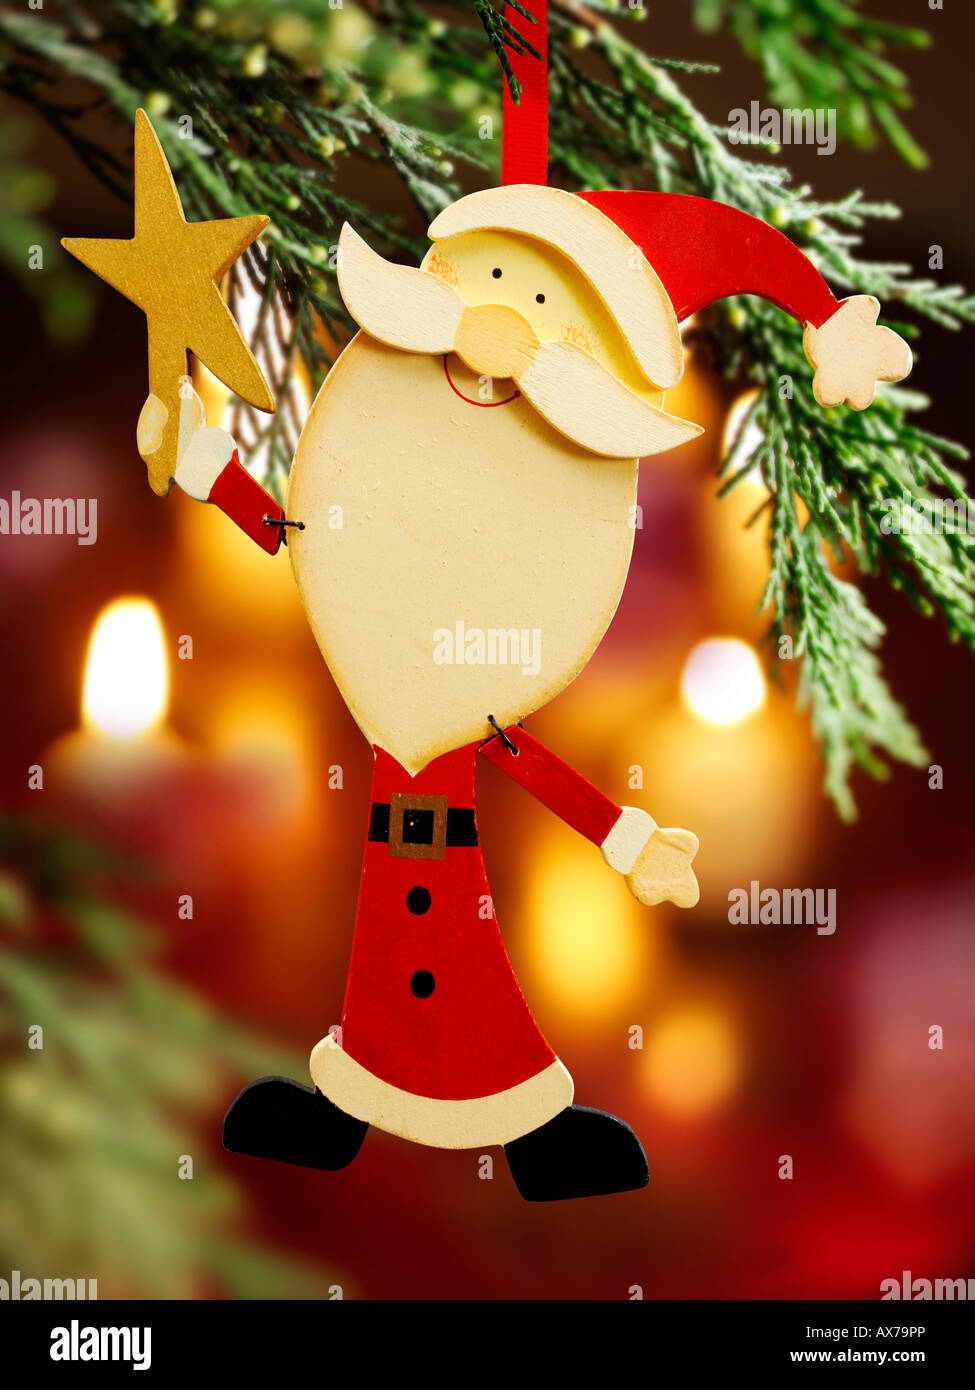 Weihnachtsmann, Weihnachtsmann, Weihnachtsbaum Dekoration gegen eine Raum-Kulisse aus Holz handbemalt Stockfoto